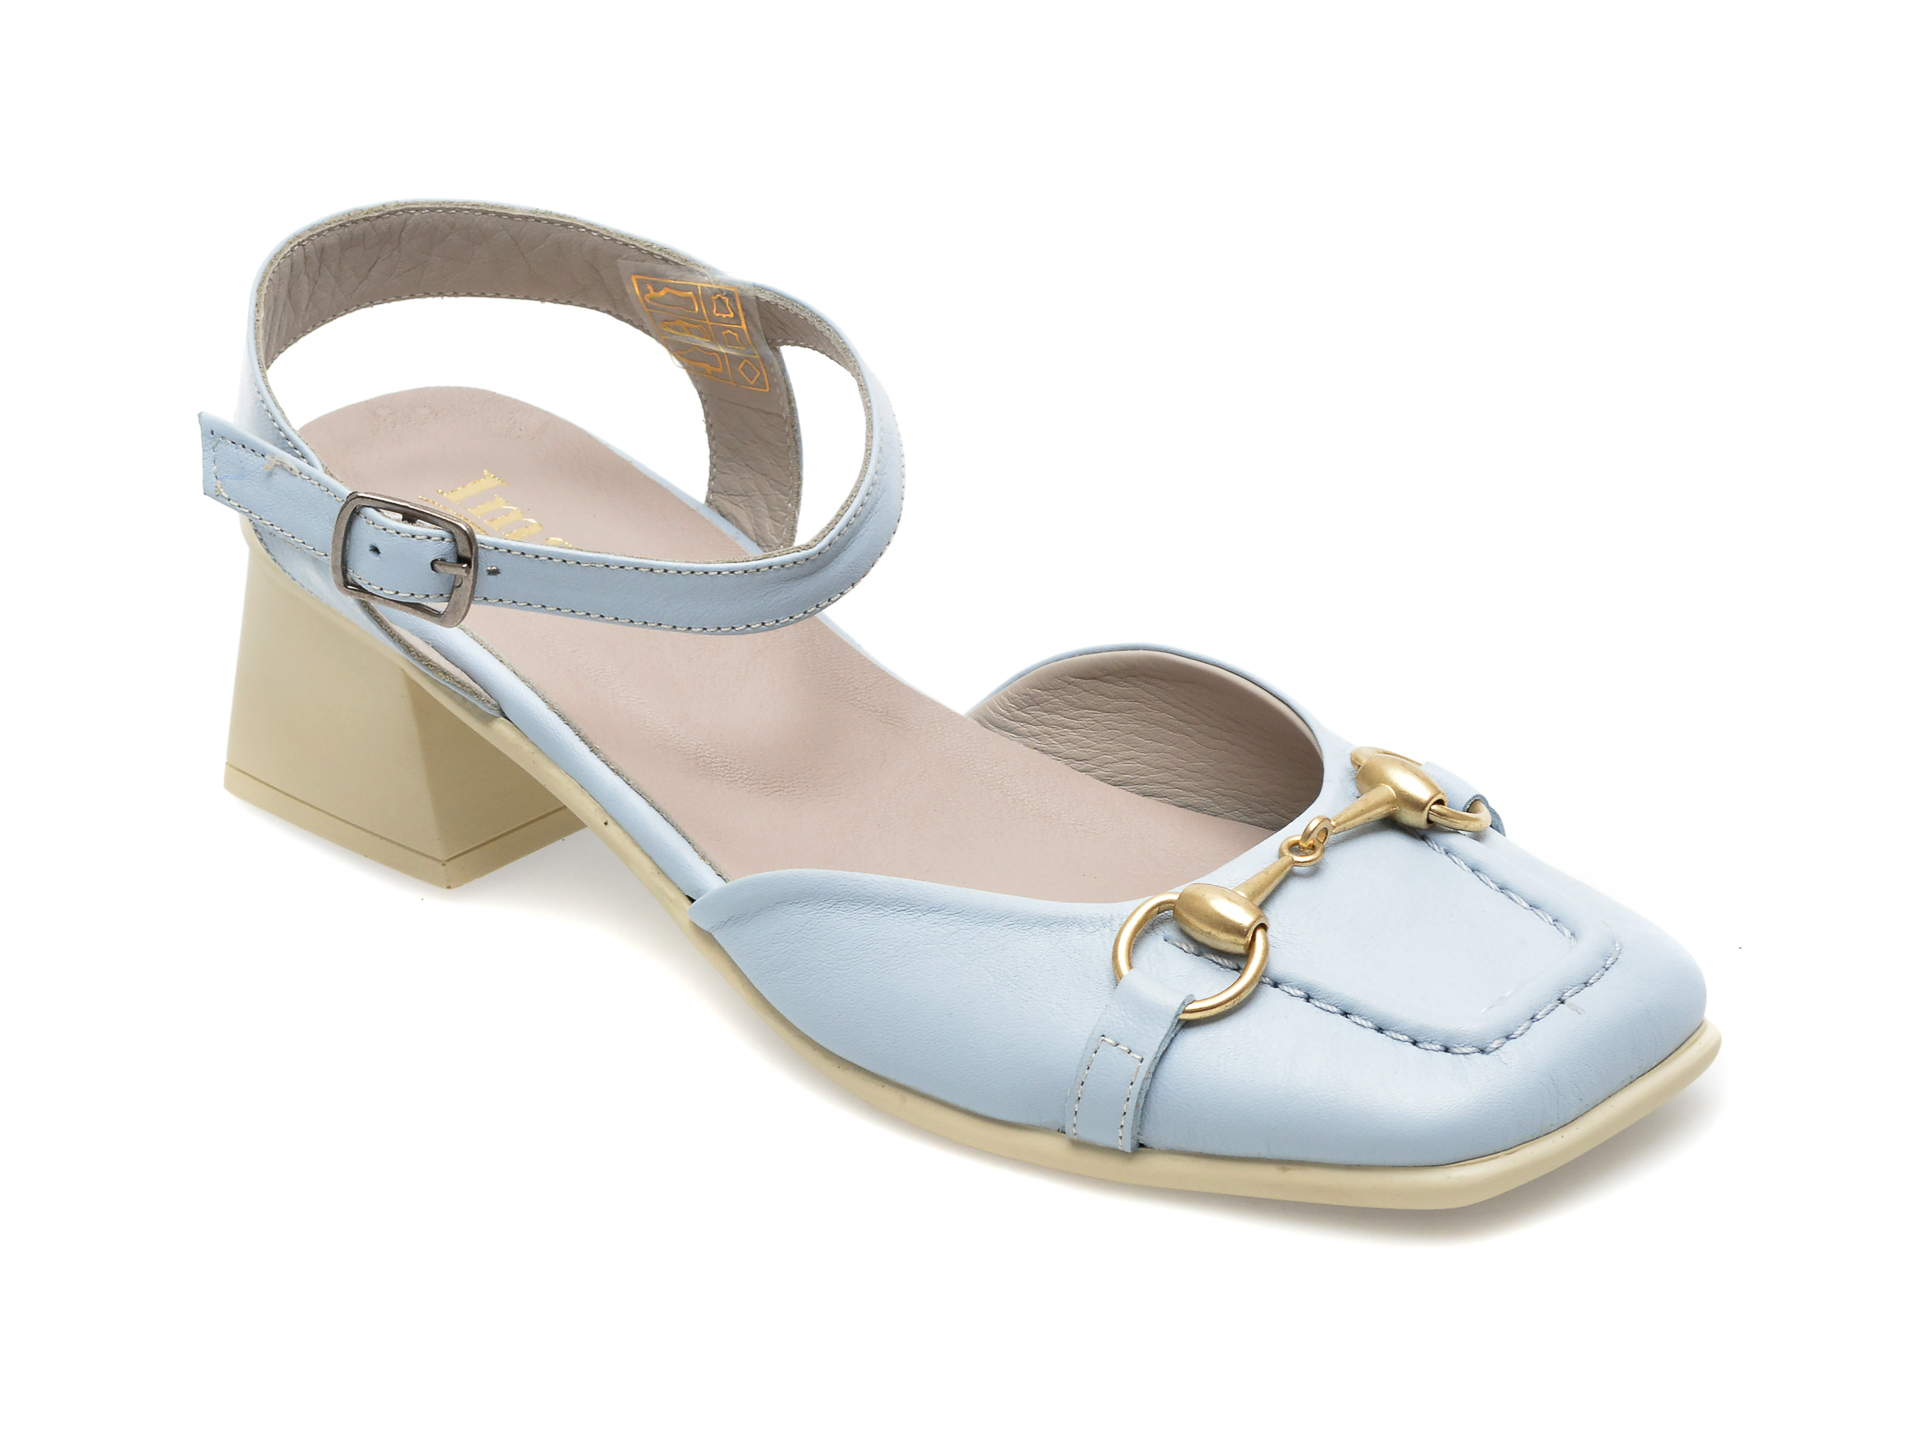 Sandale IMAGE albastre, 2119, din piele naturala /femei/sandale